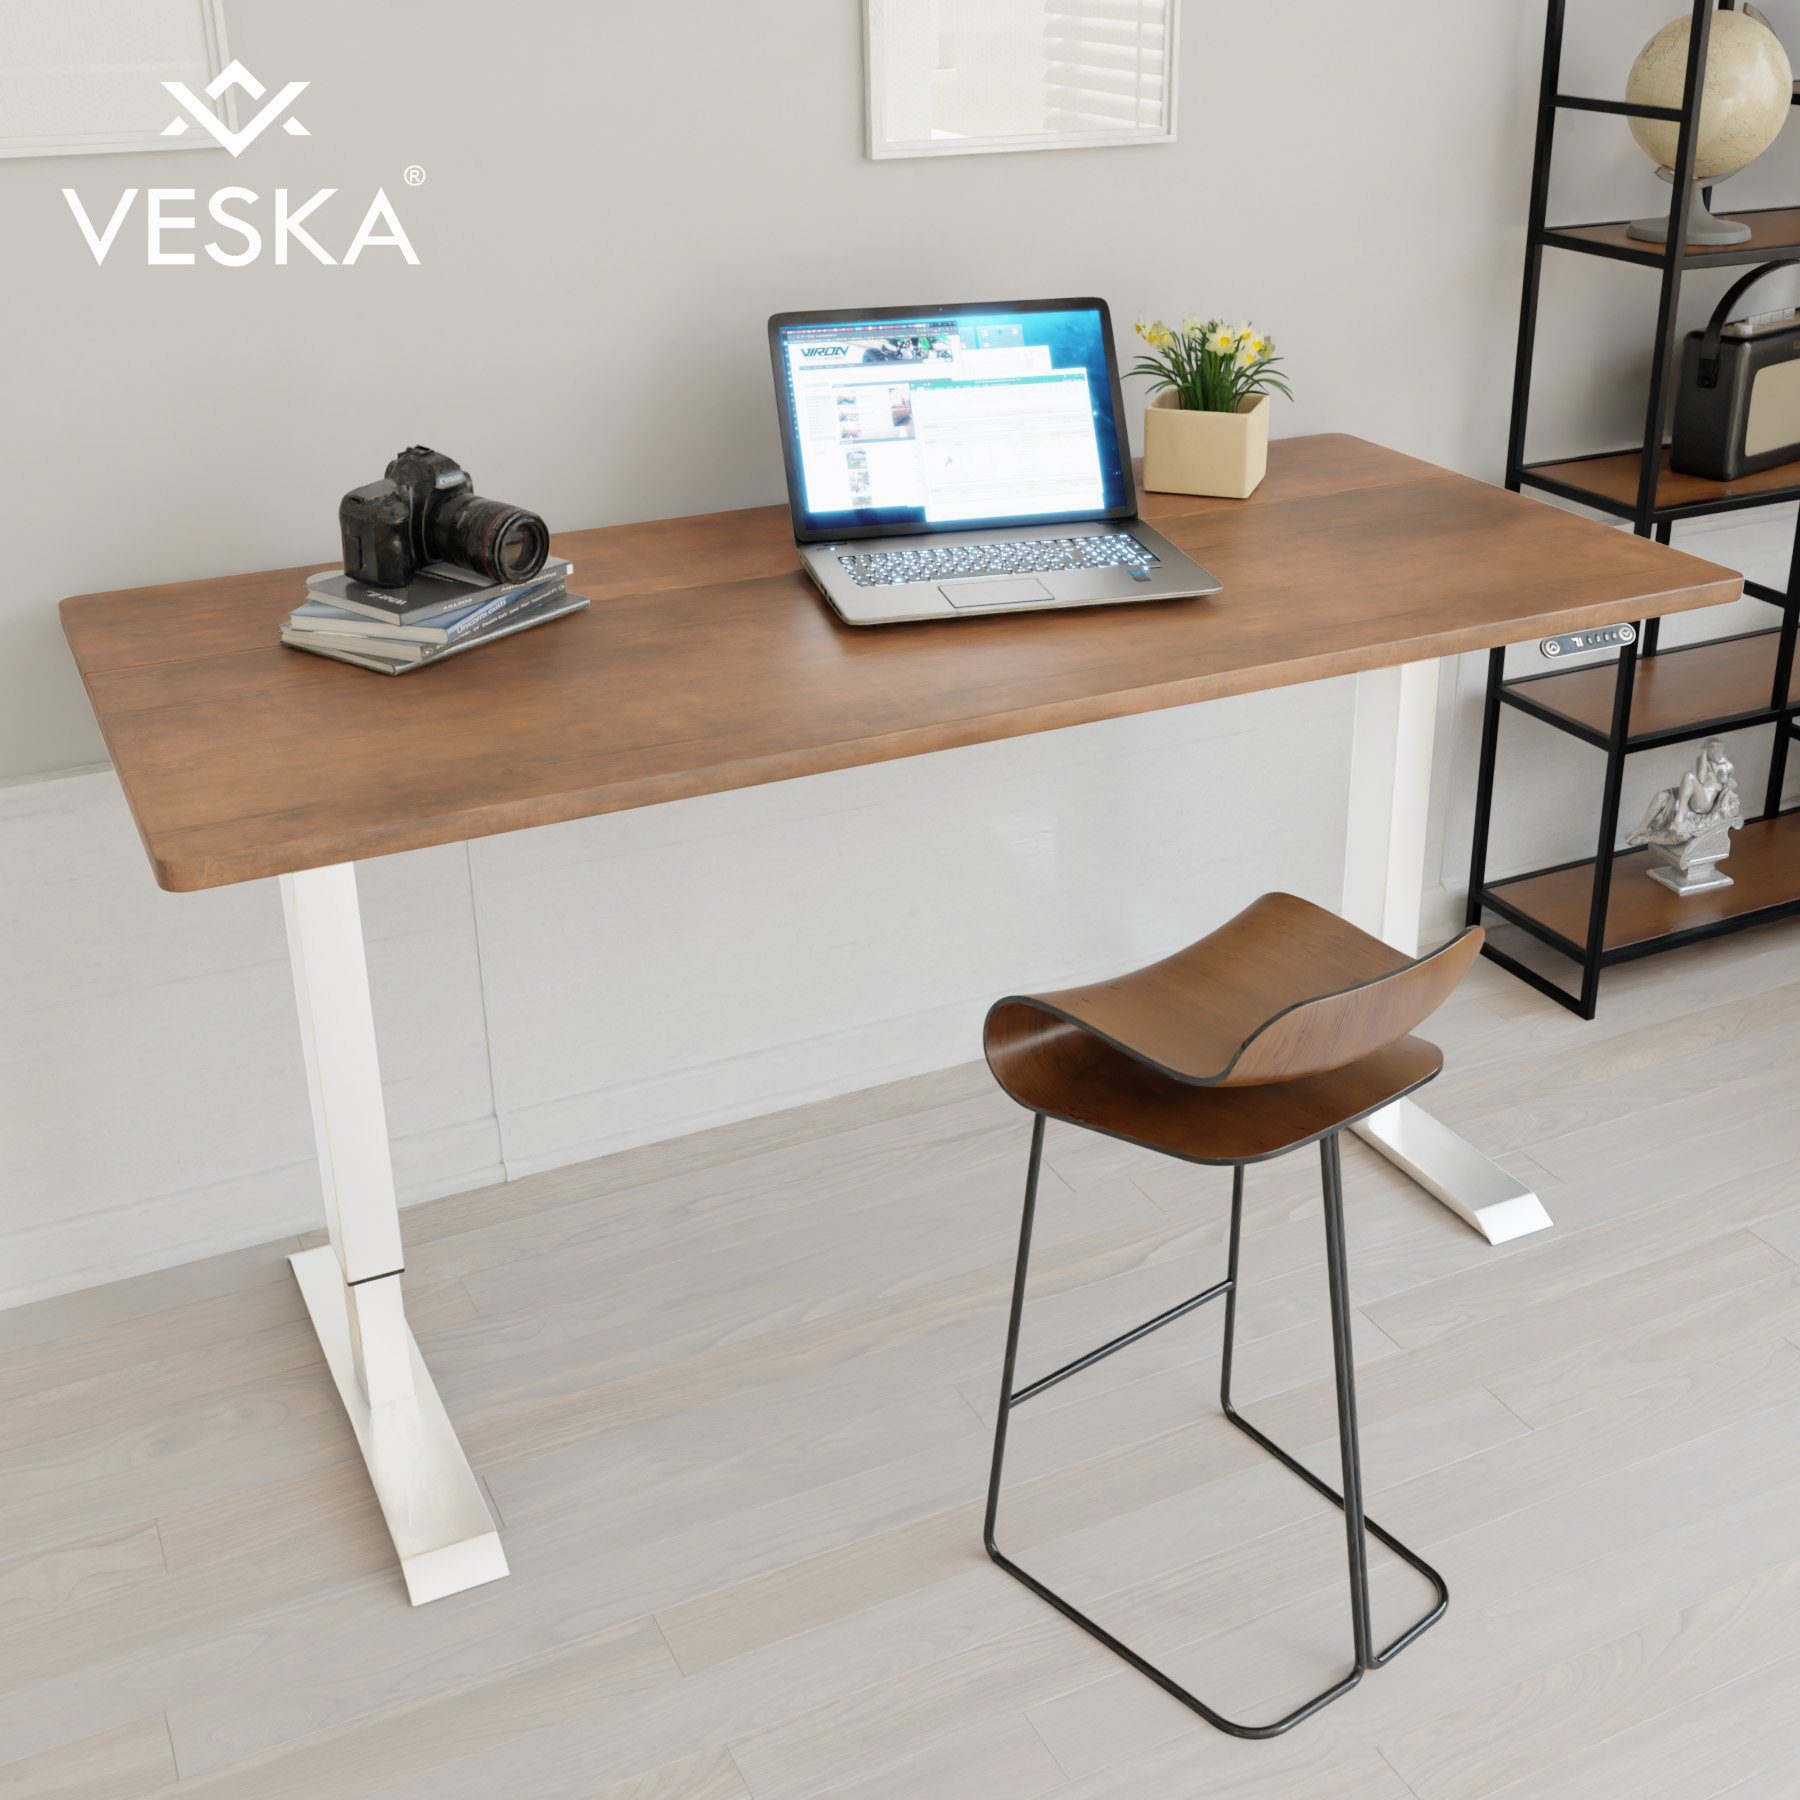 VESKA Schreibtisch Höhenverstellbar 140 x 70 cm - Bürotisch Elektrisch mit  Touchscreen - Sitz- & Stehpult Home Office